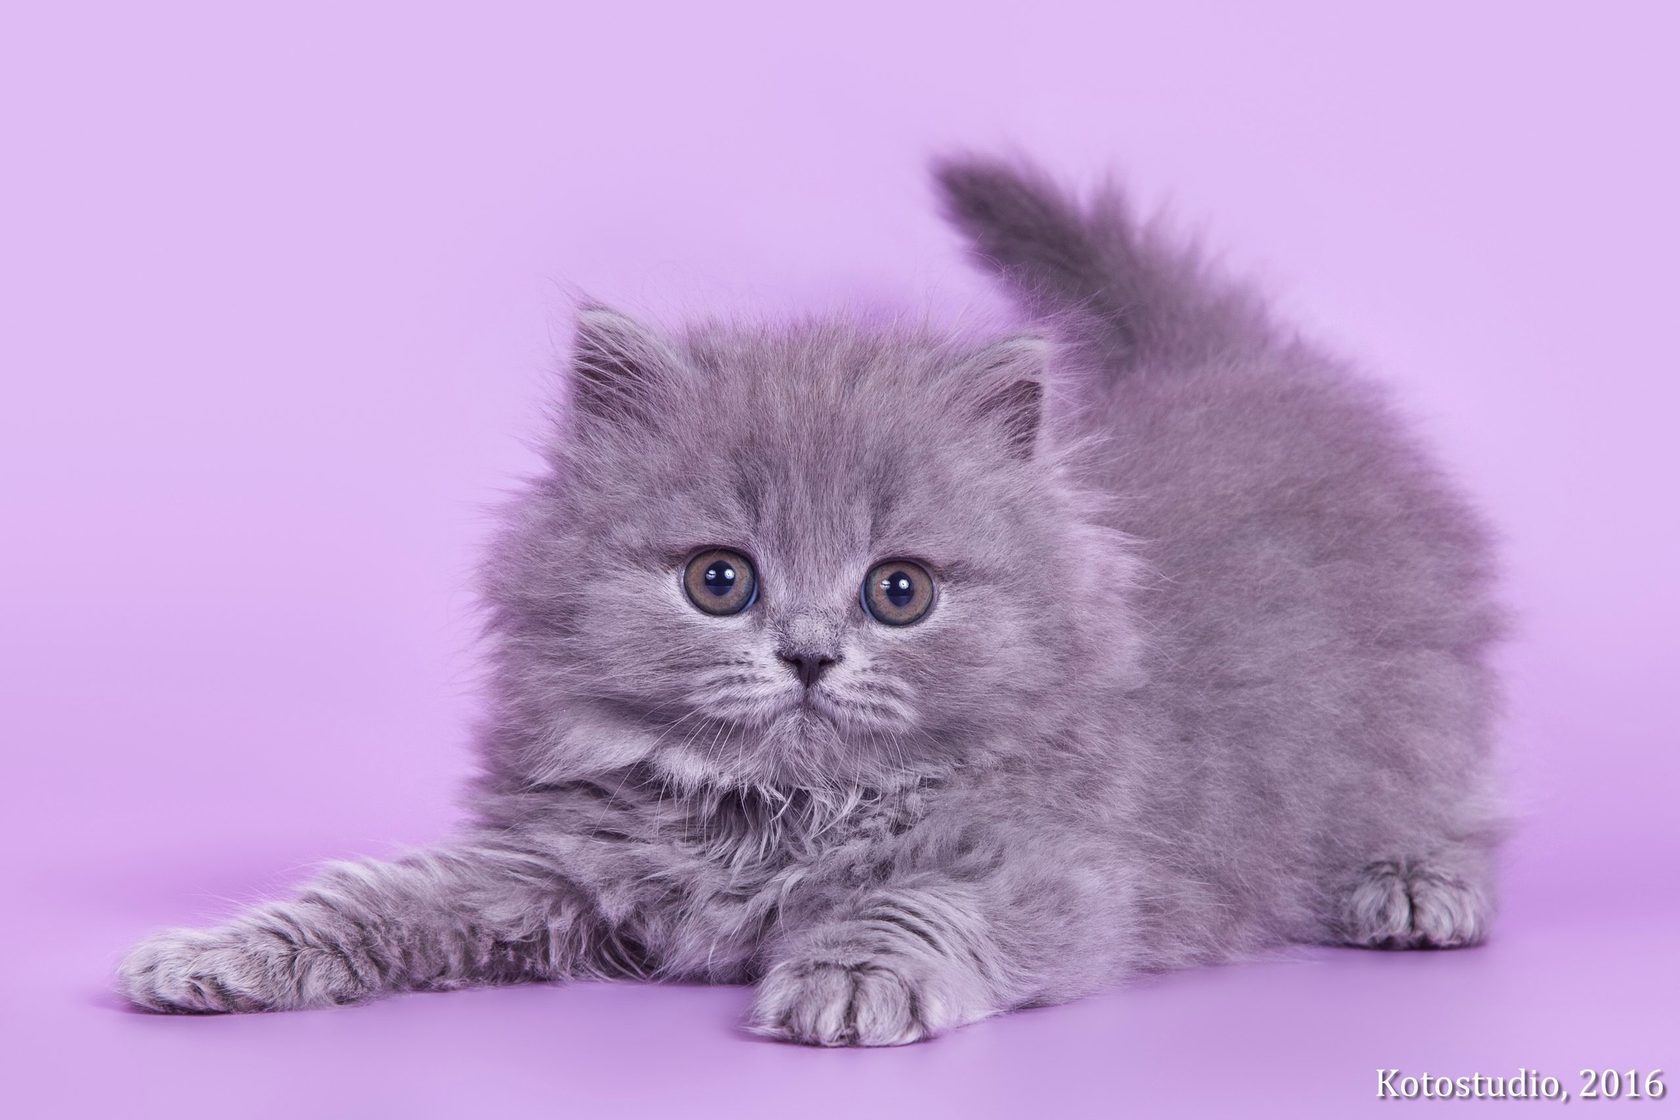 Купить котенка голубого окраса пушистые в СПБ. Купить котёнка британца в СПБ недорого в Санкт-Петербурге. Купить котенка в спб британский